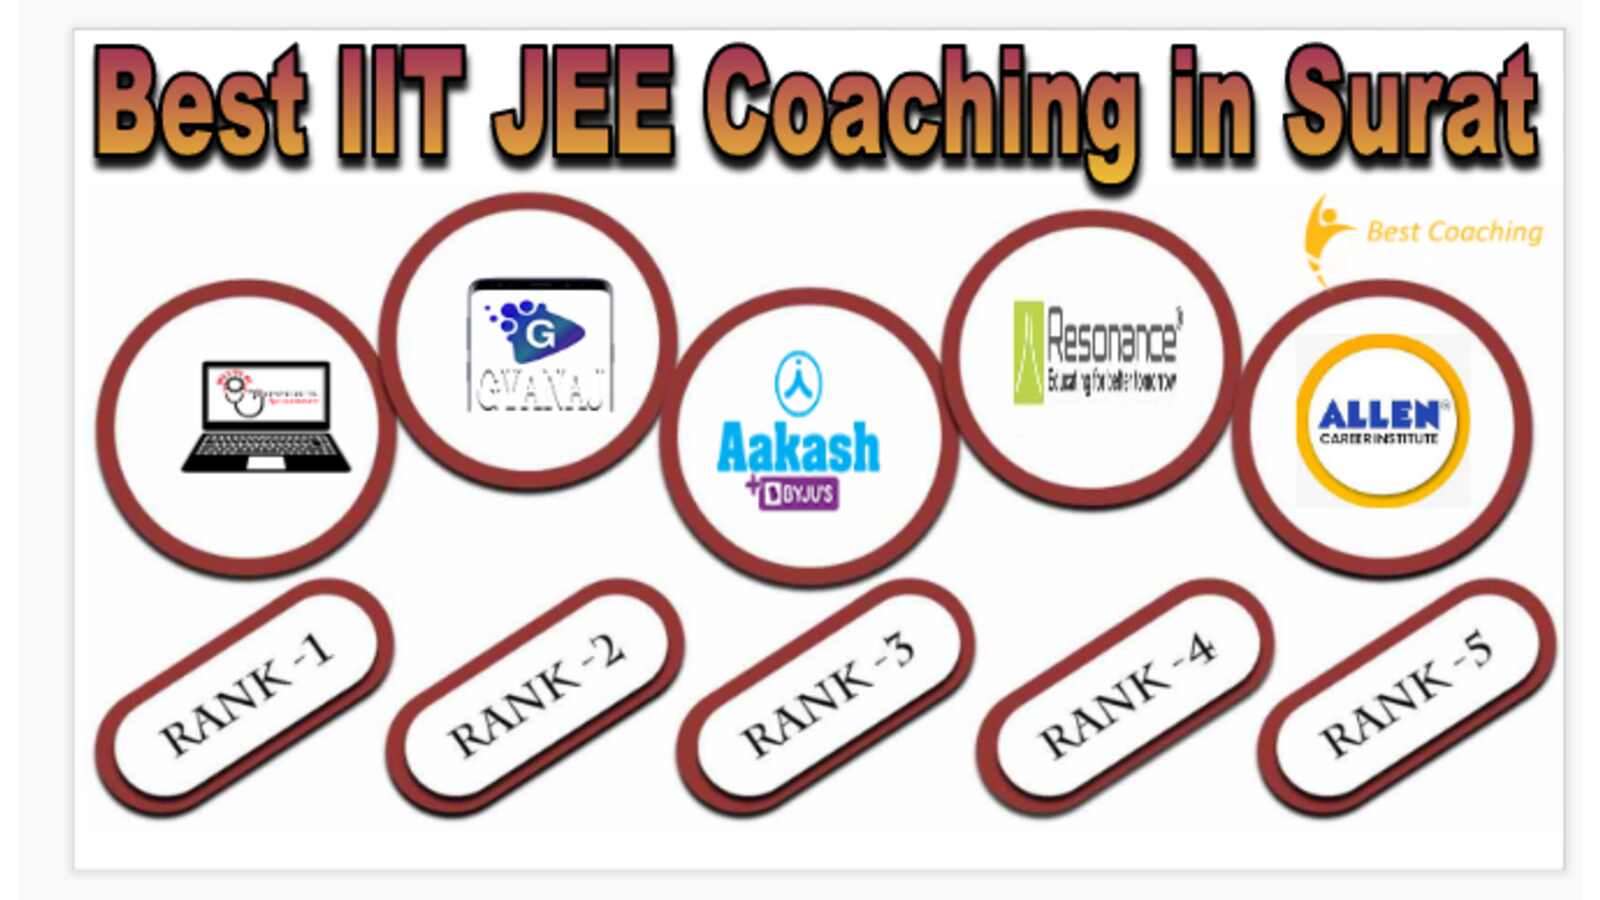 Best IIT JEE Coaching in Surat 